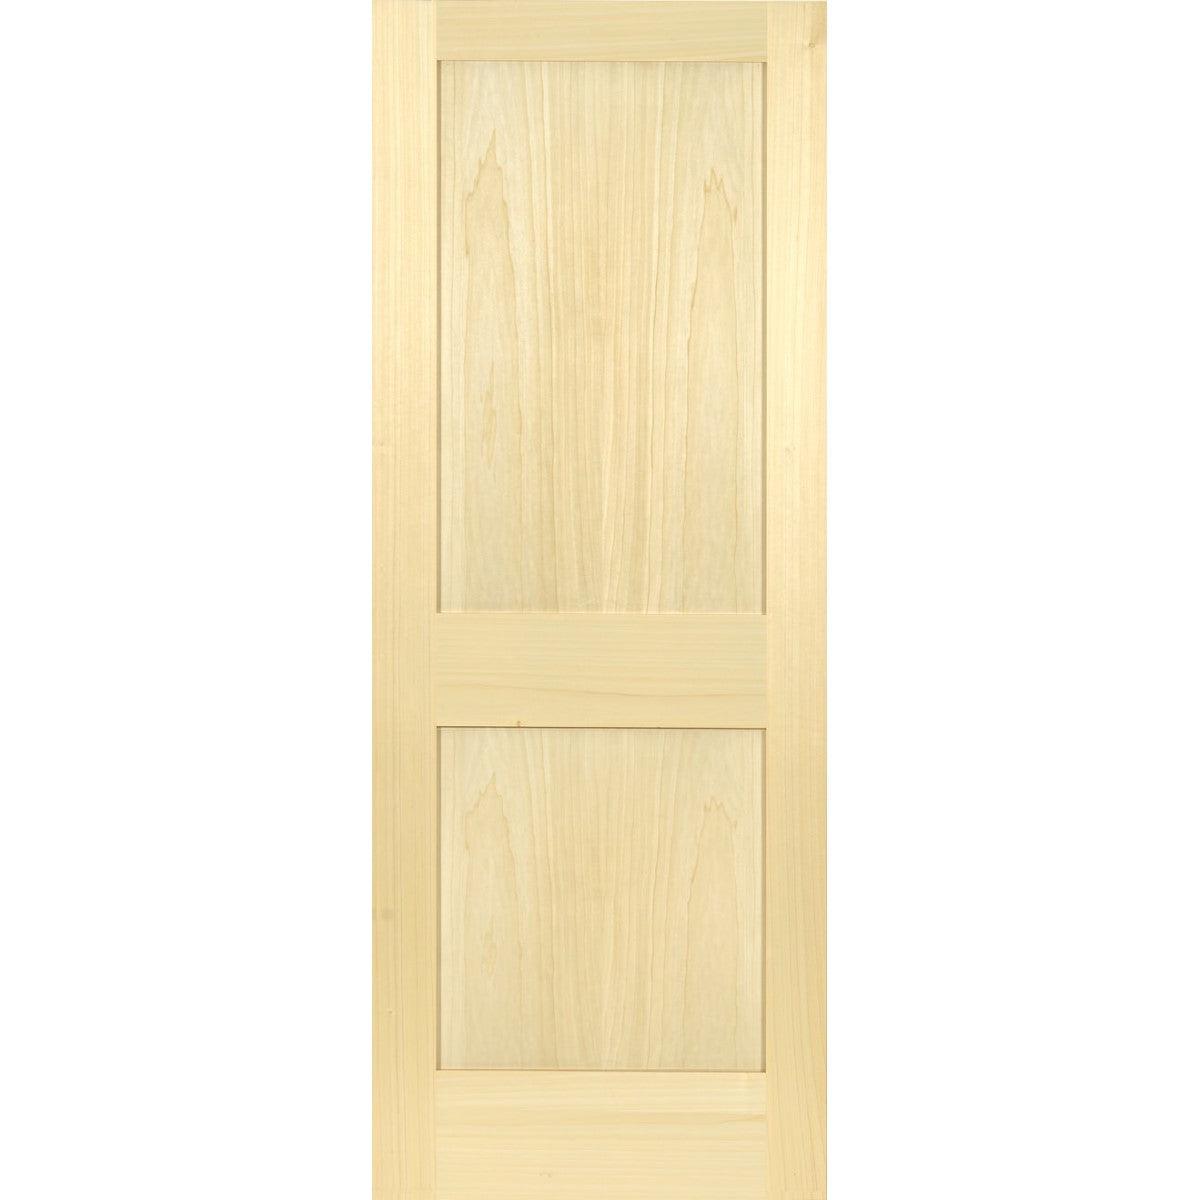 Poplar Interior Door Slab (2 Panel Shaker) - Pease Doors: The Door Store